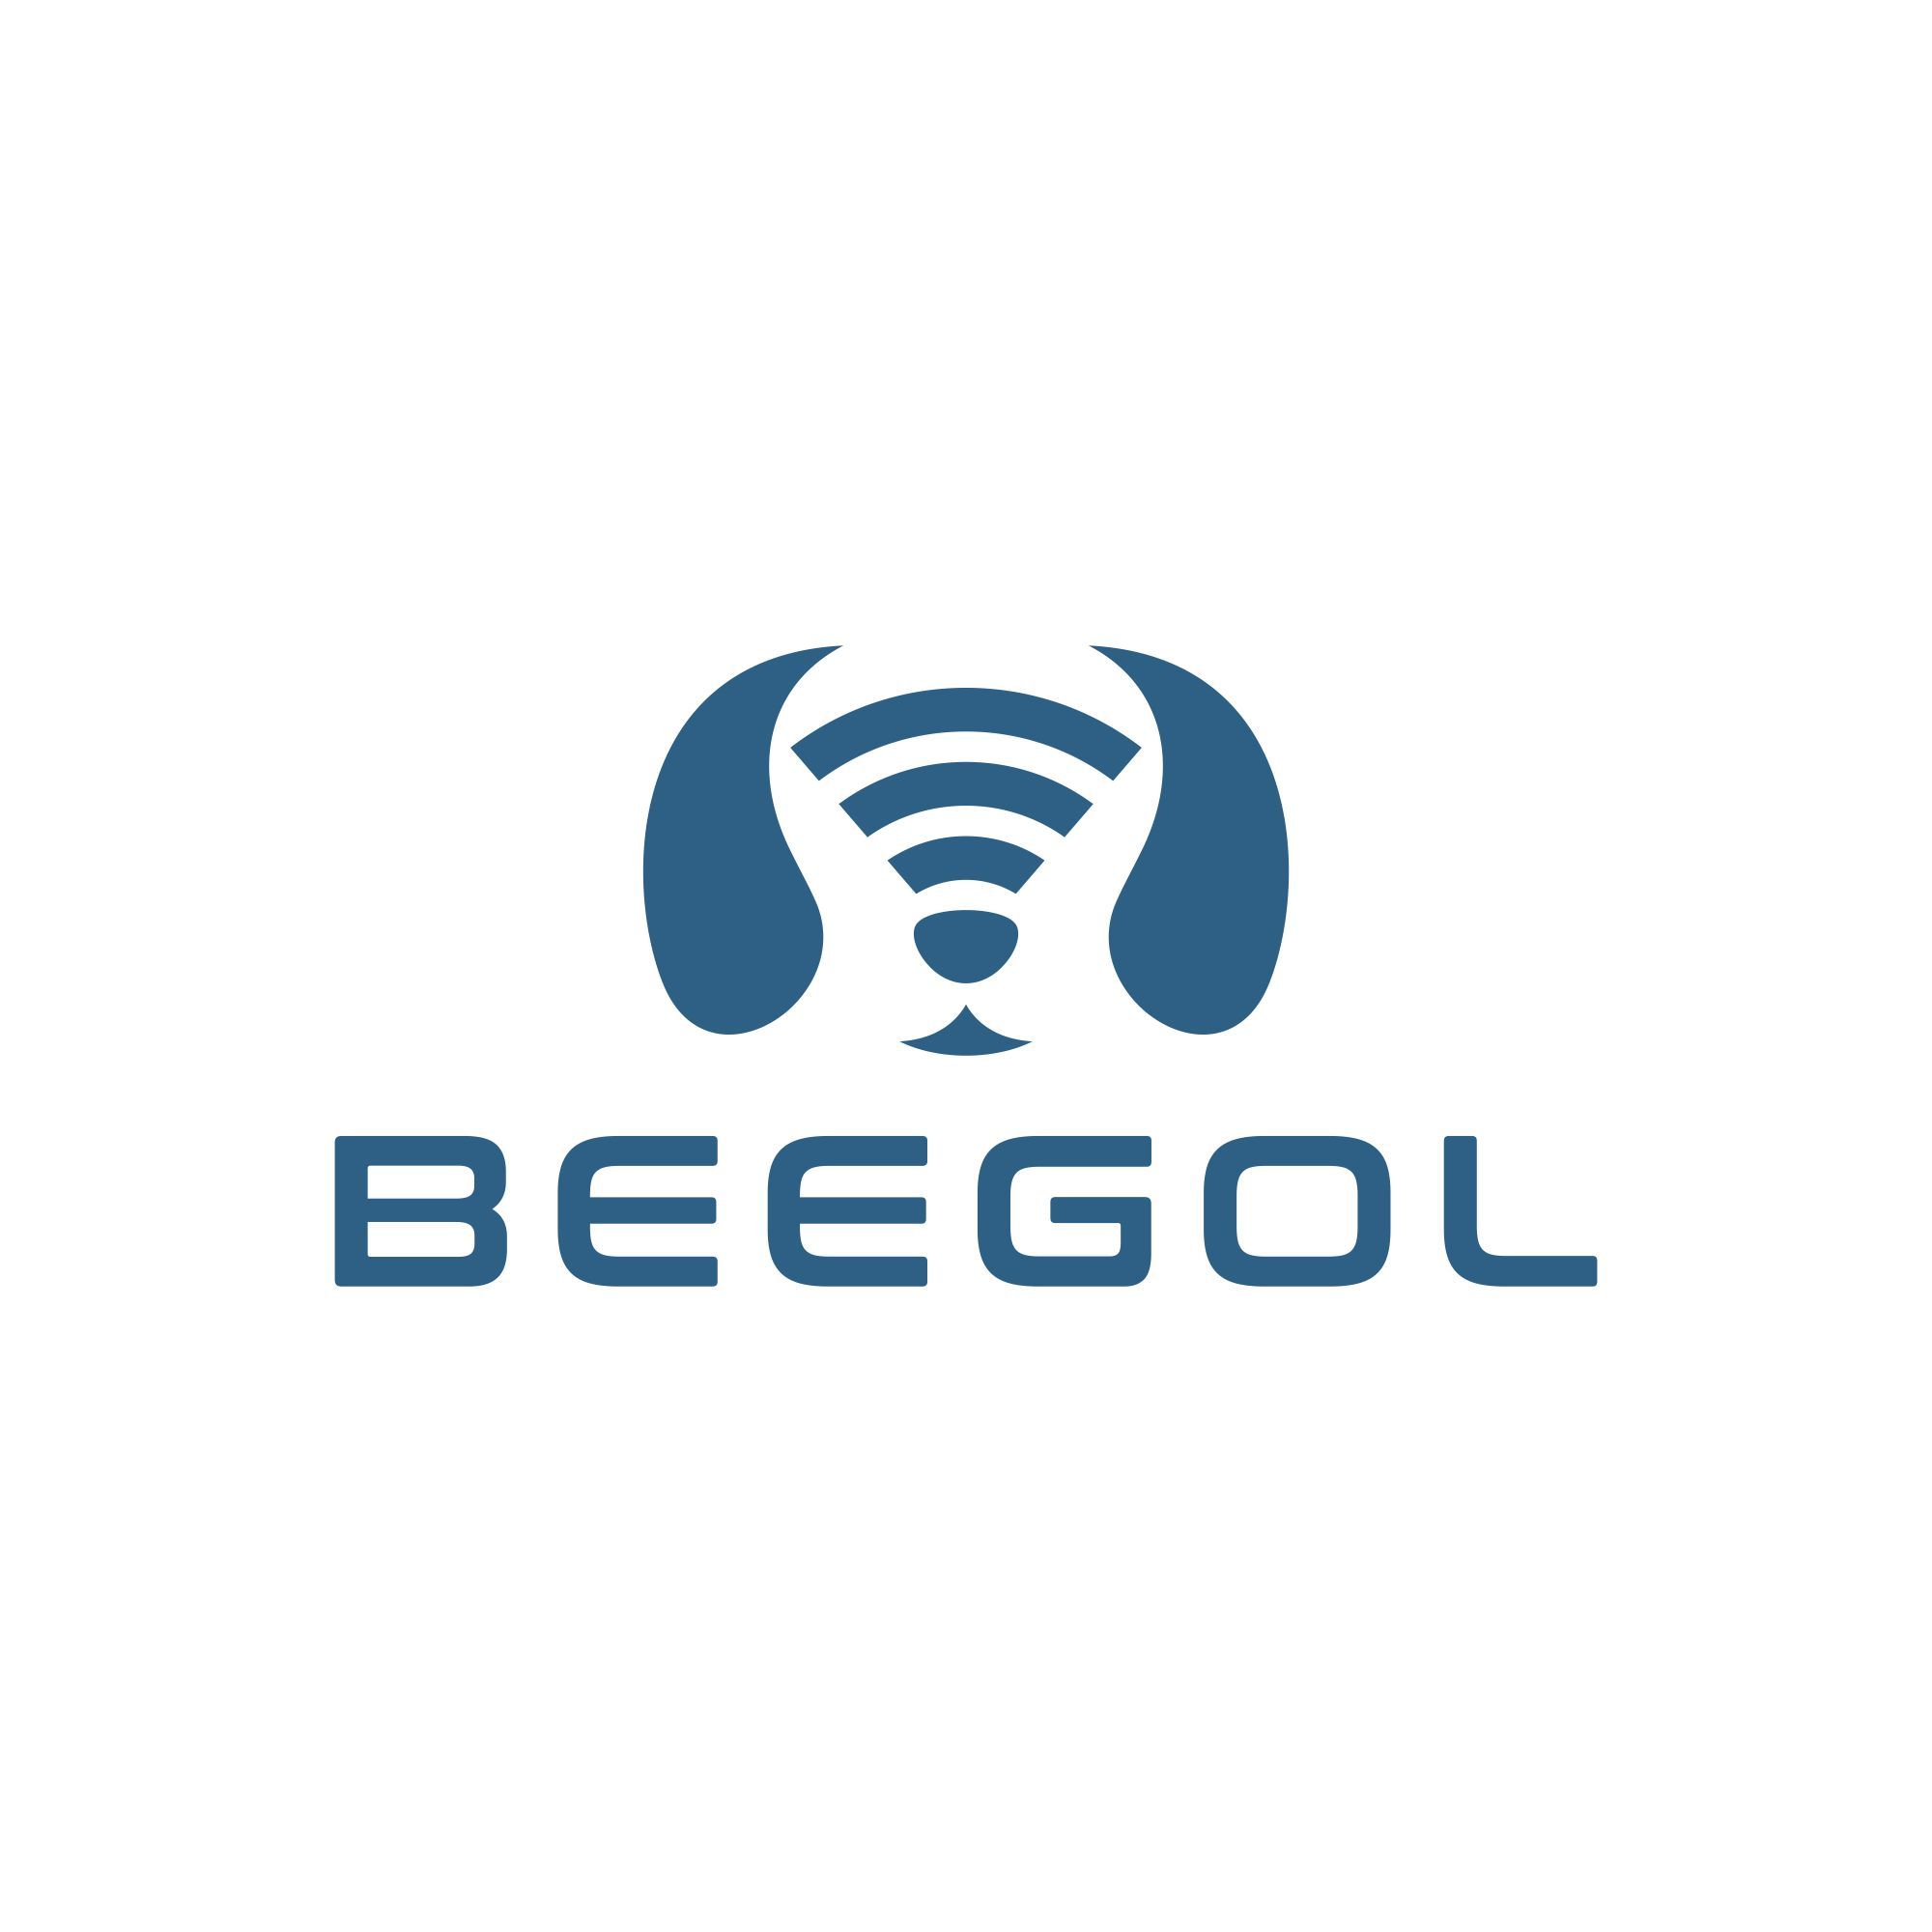 Beegol logo